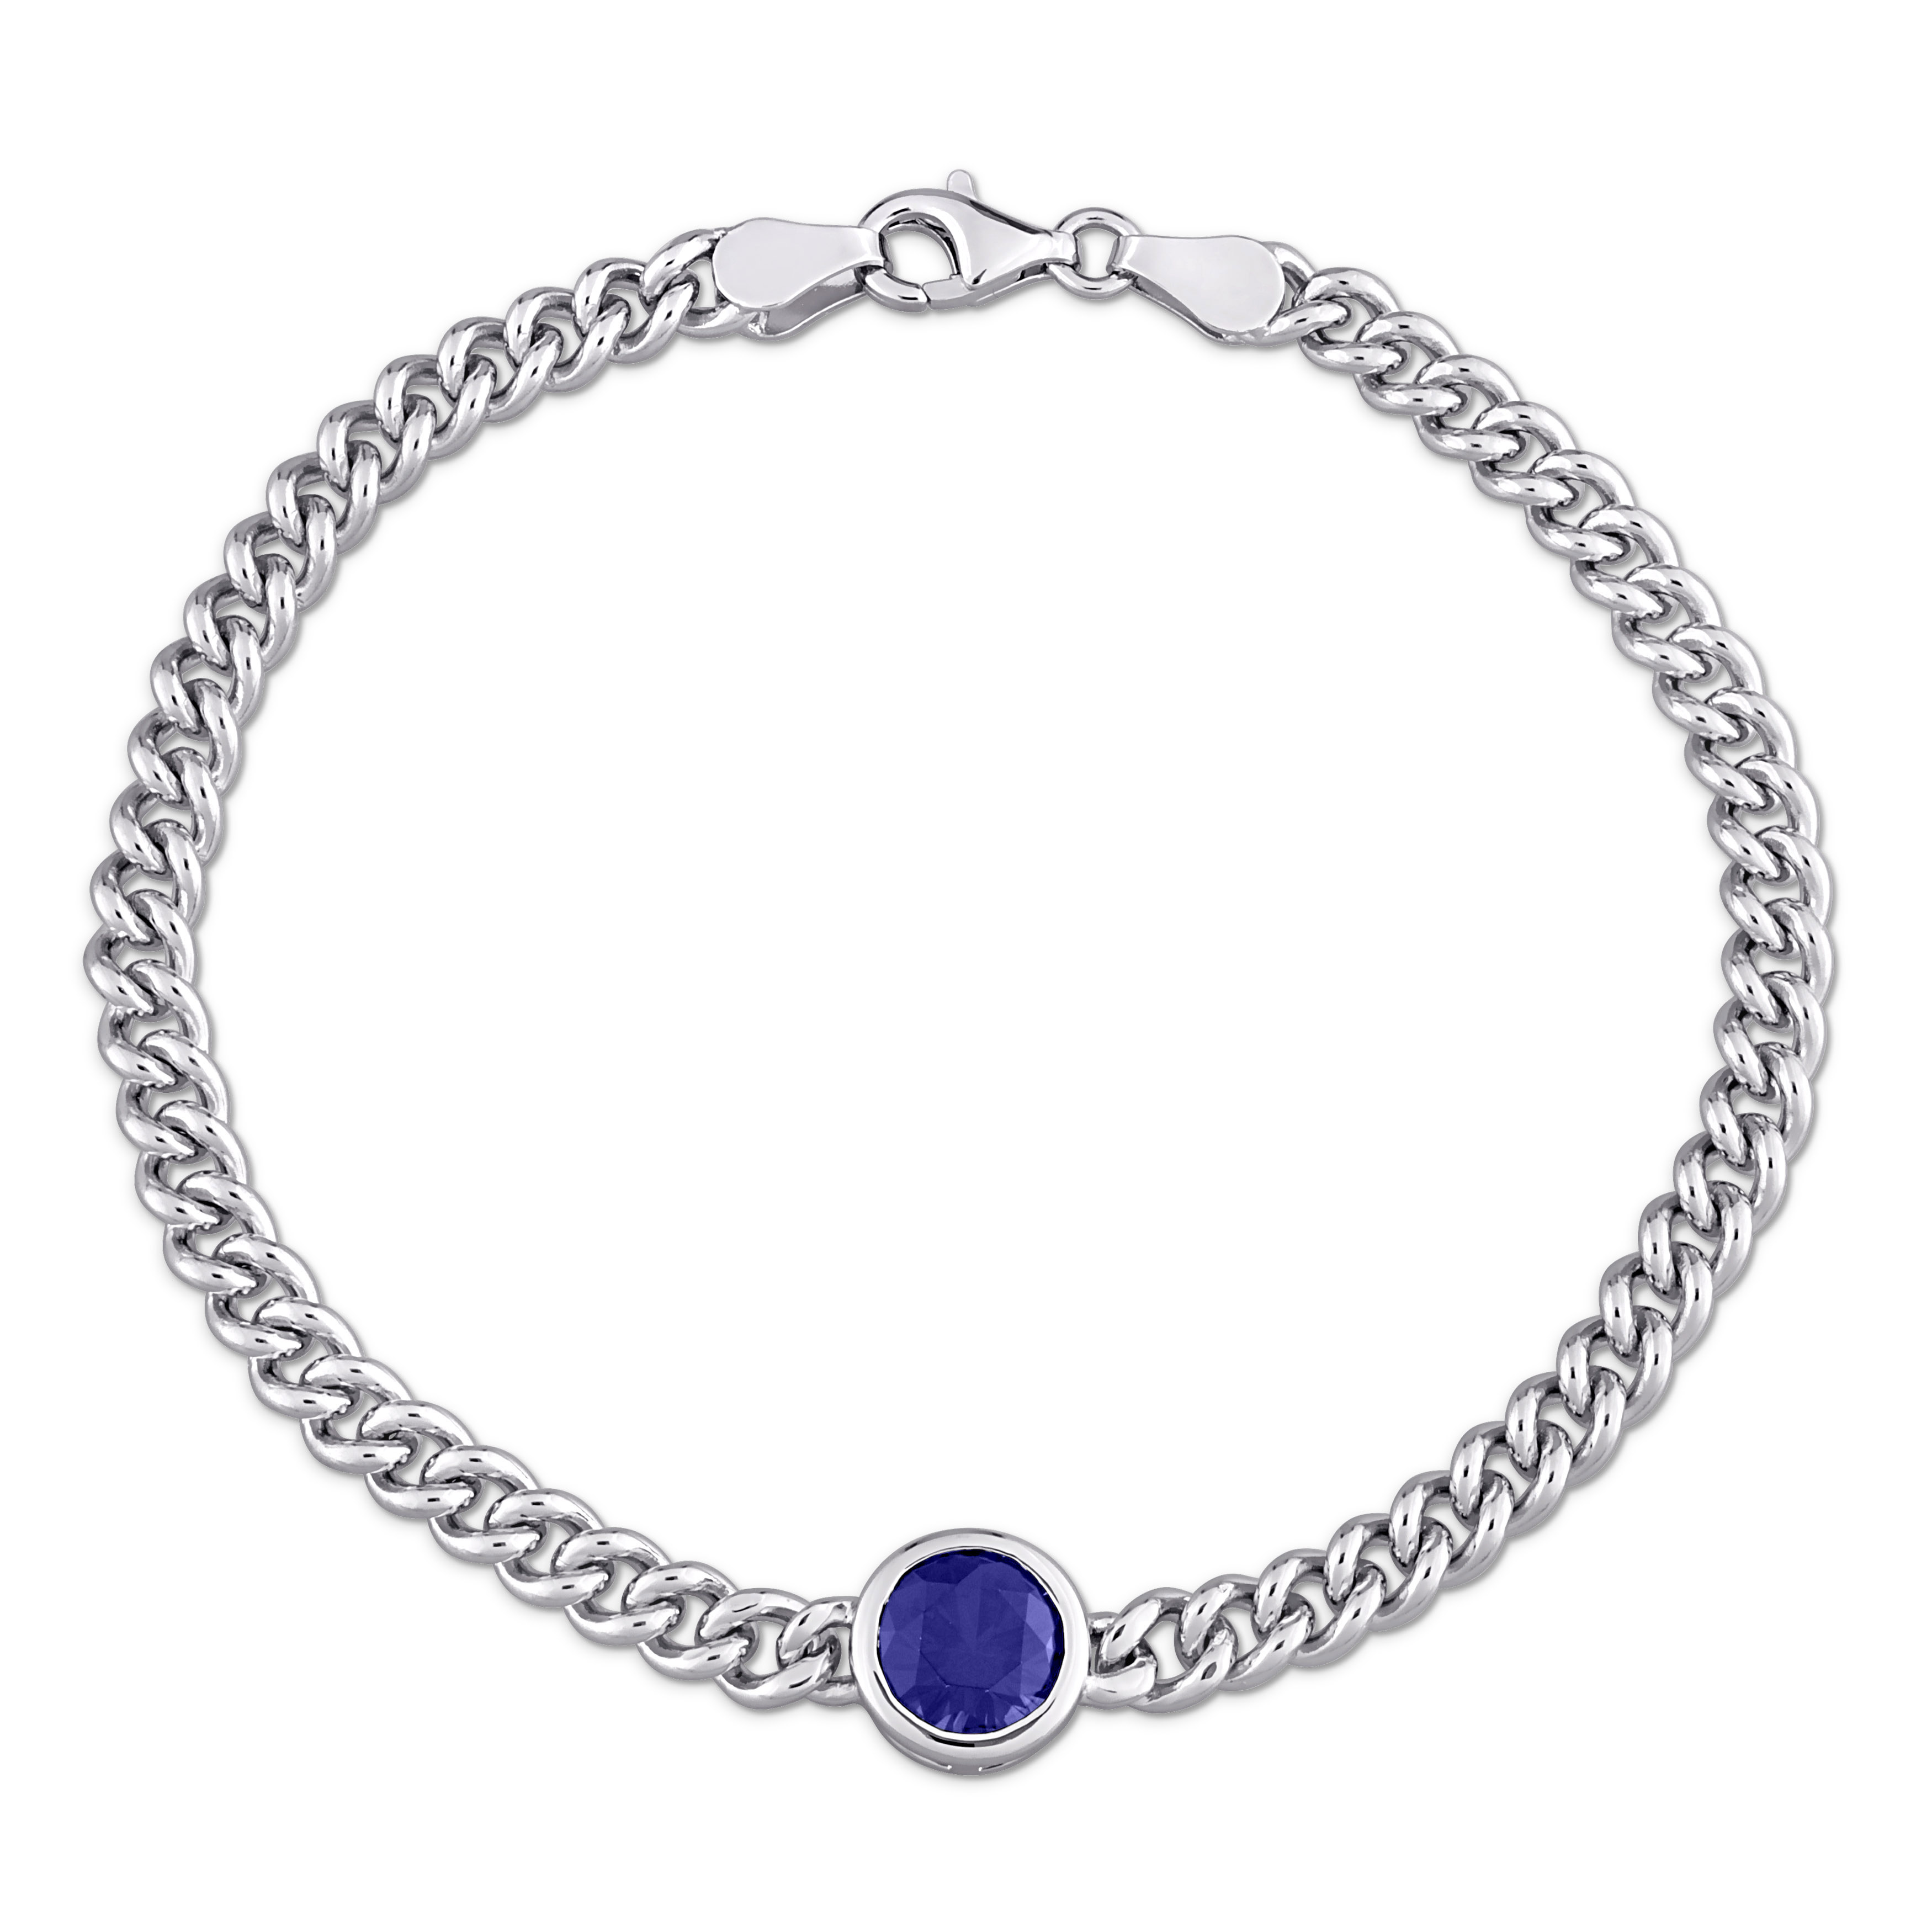 1 5/8 CT TGW Created Blue Sapphire Bracelet in Sterling Silver  - 7.5 in.